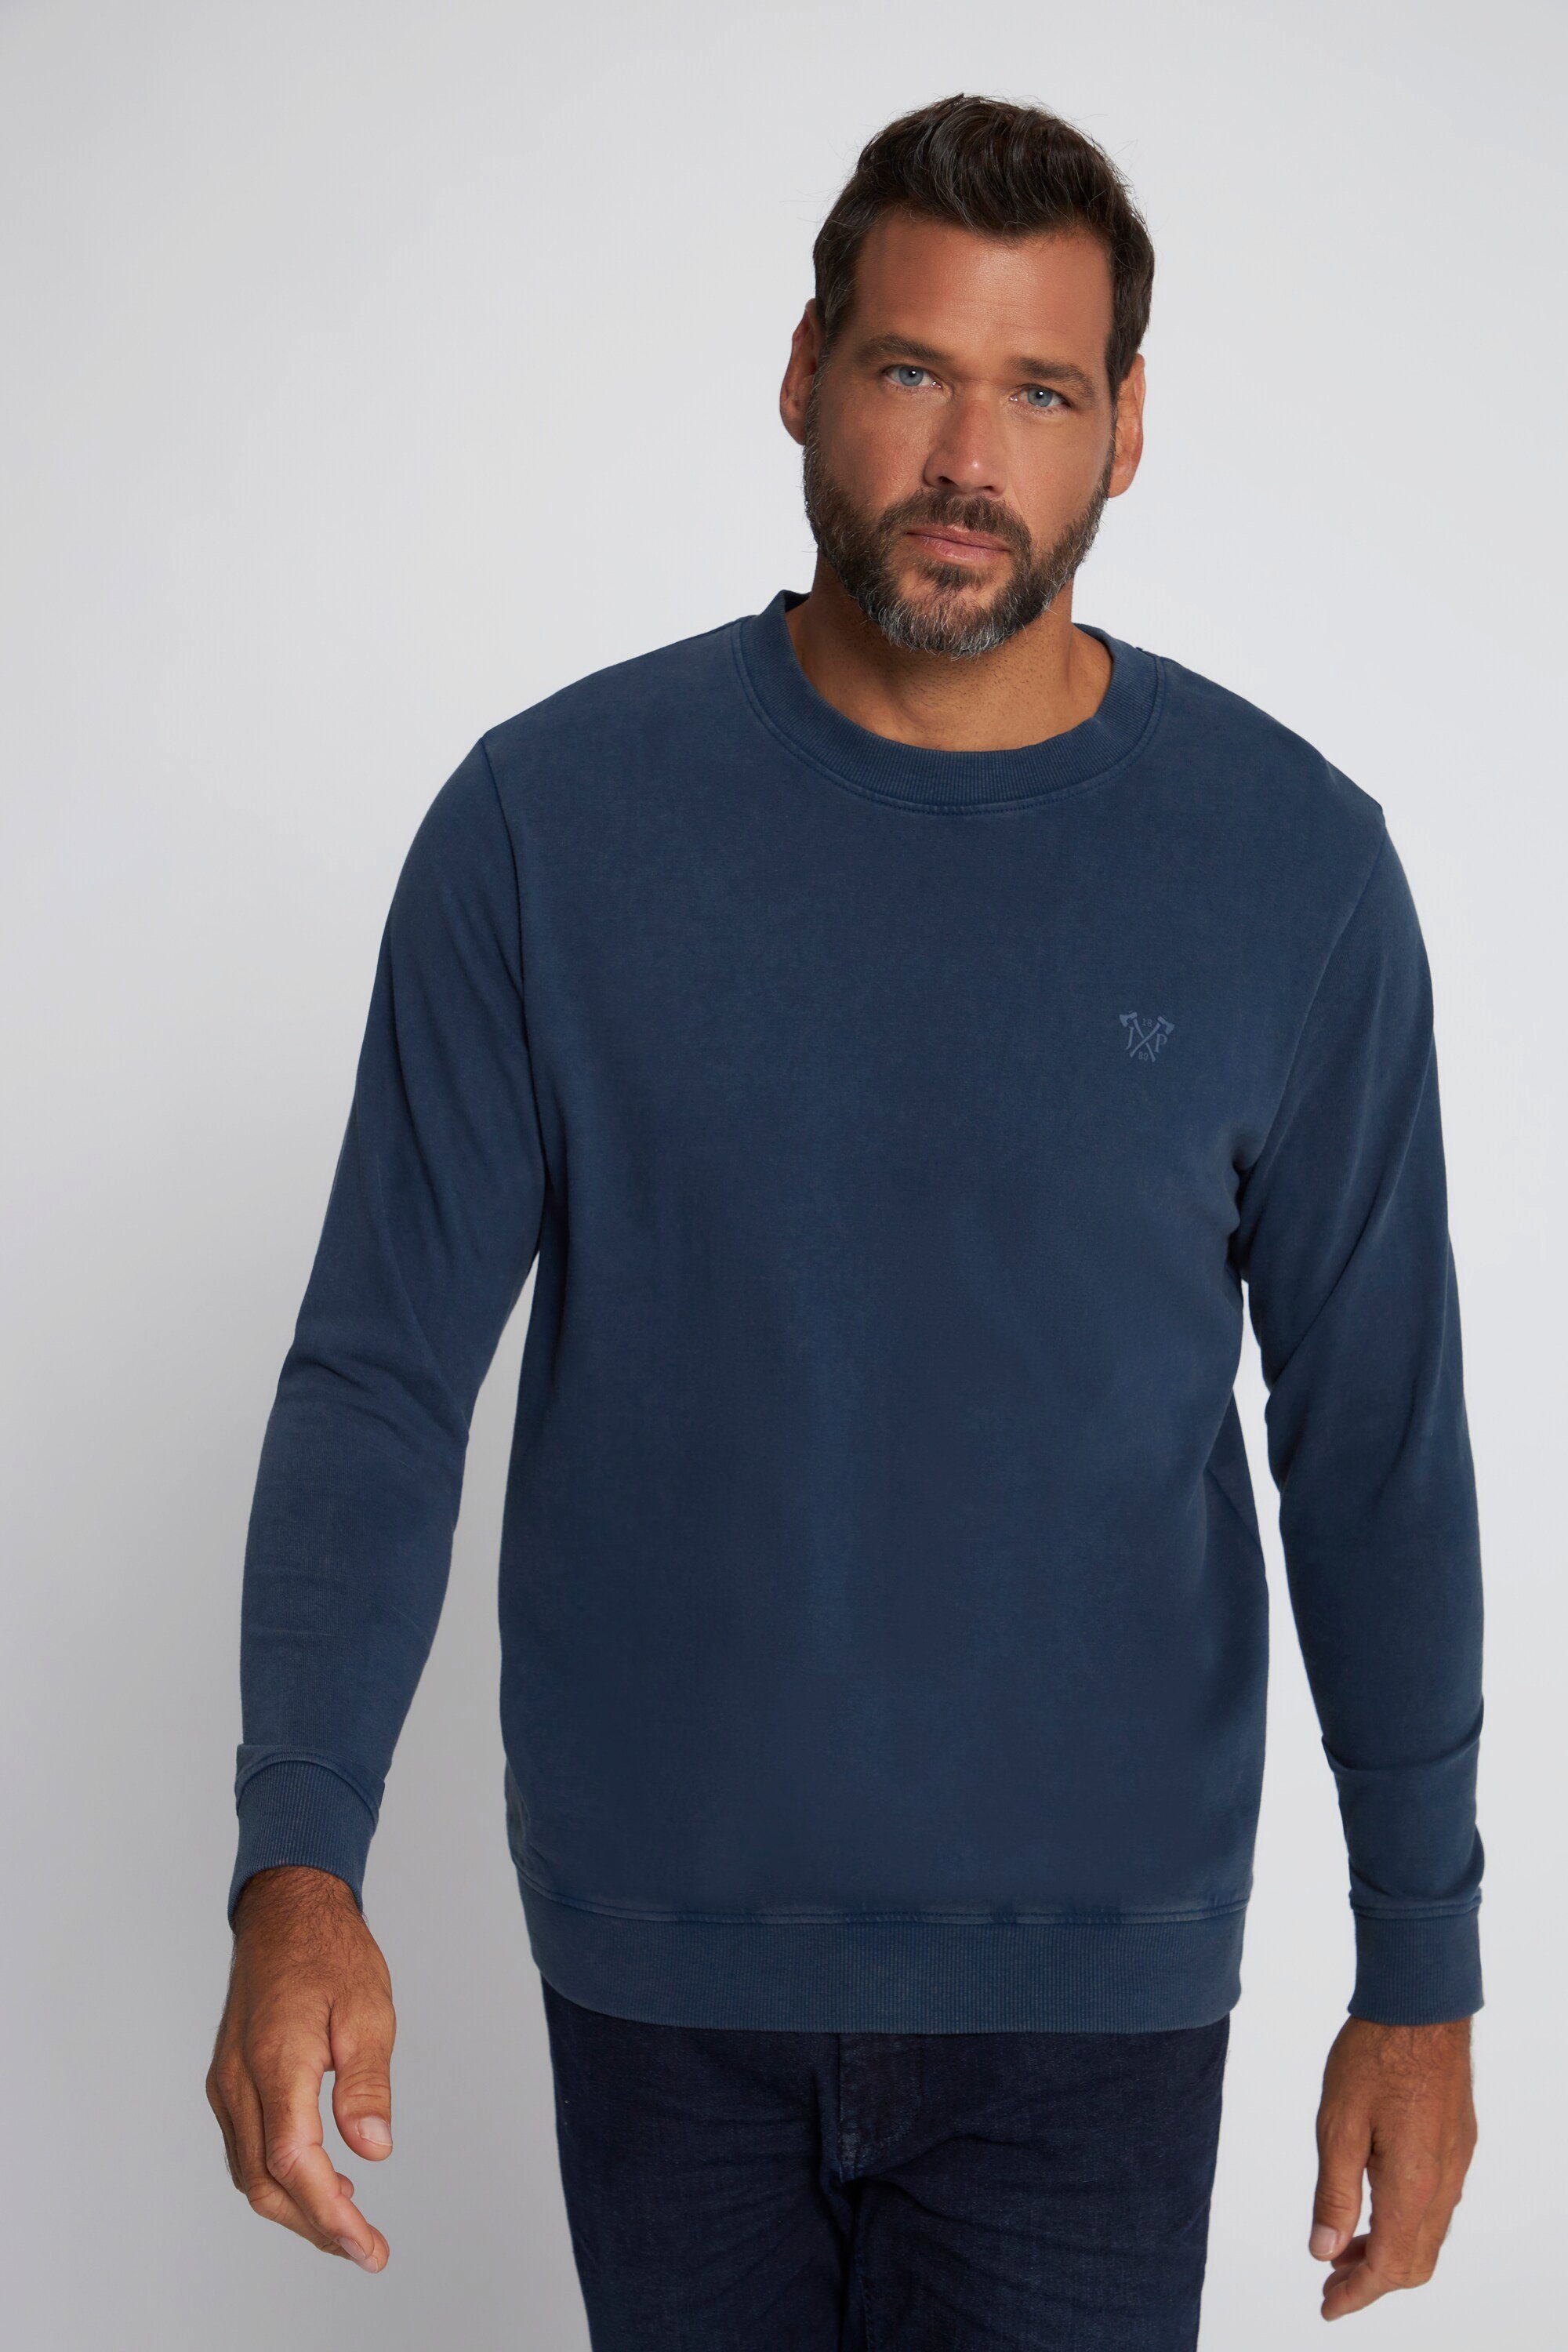 JP1880 T-Shirt Sweatshirt leichte Qualität Bauchfit acid washed mattes nachtblau